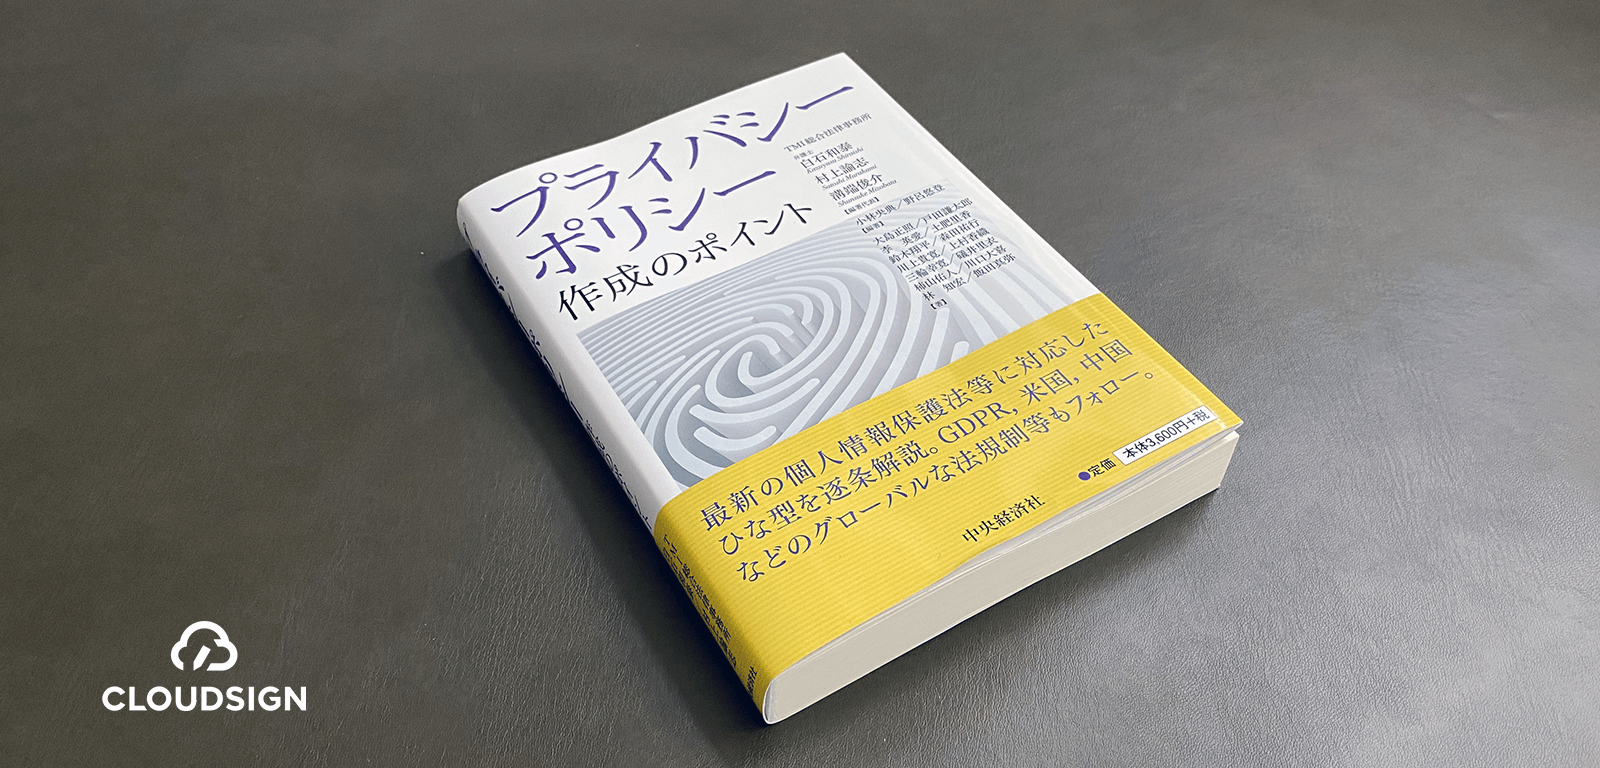 大阪弁護士会『知的財産契約の実務 理論と書式』—伝説の知財実務書の 